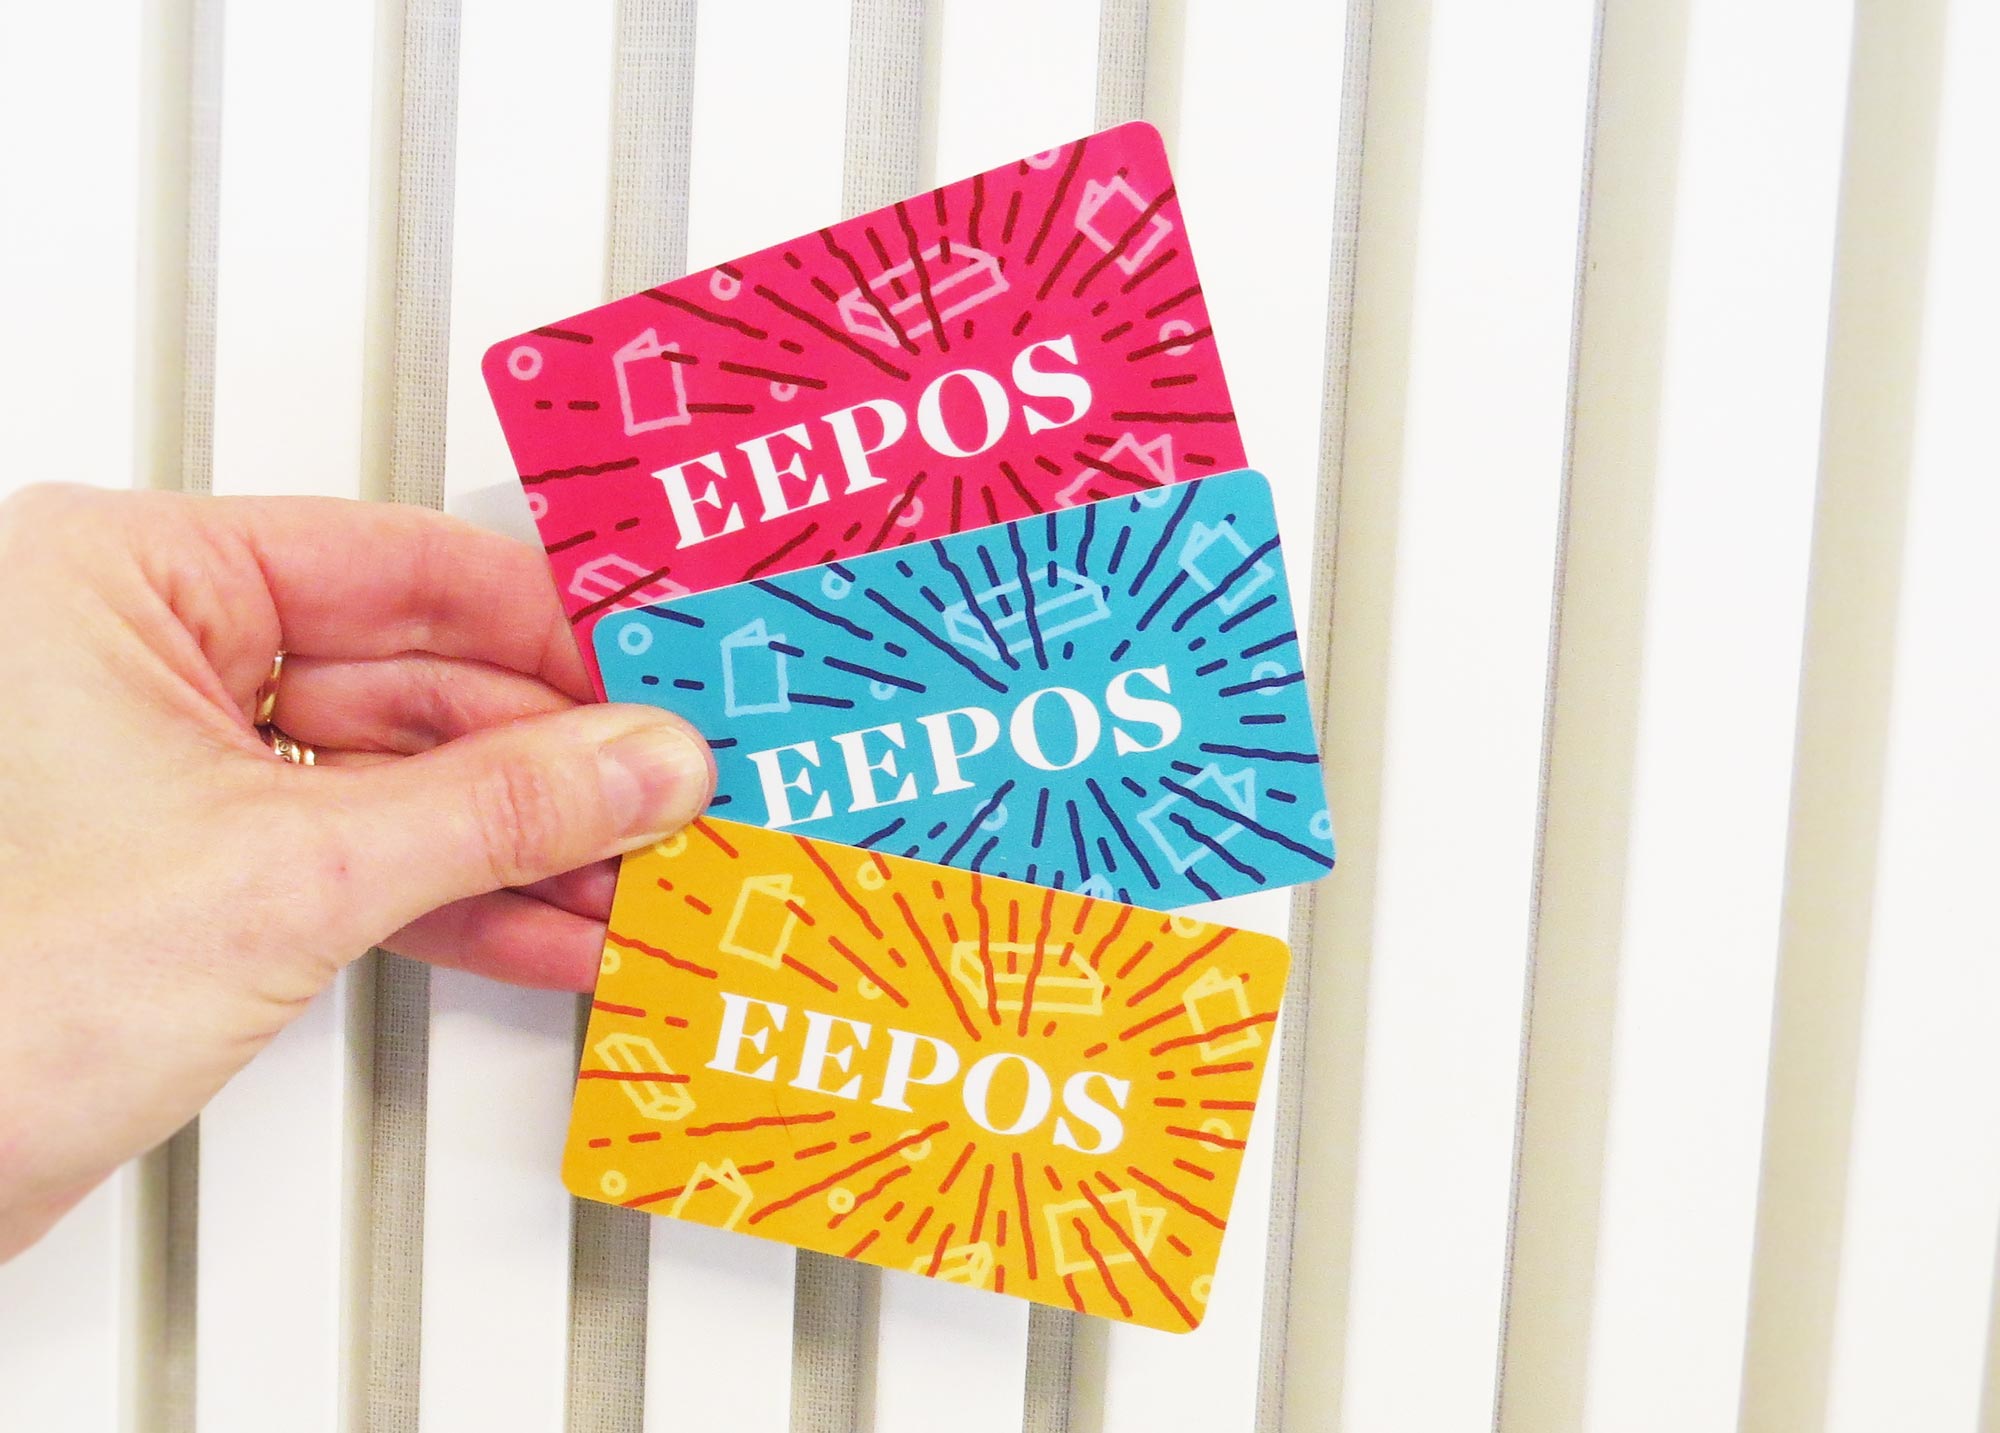 Eepos-kirjastokortit ovat pirteän värisiä